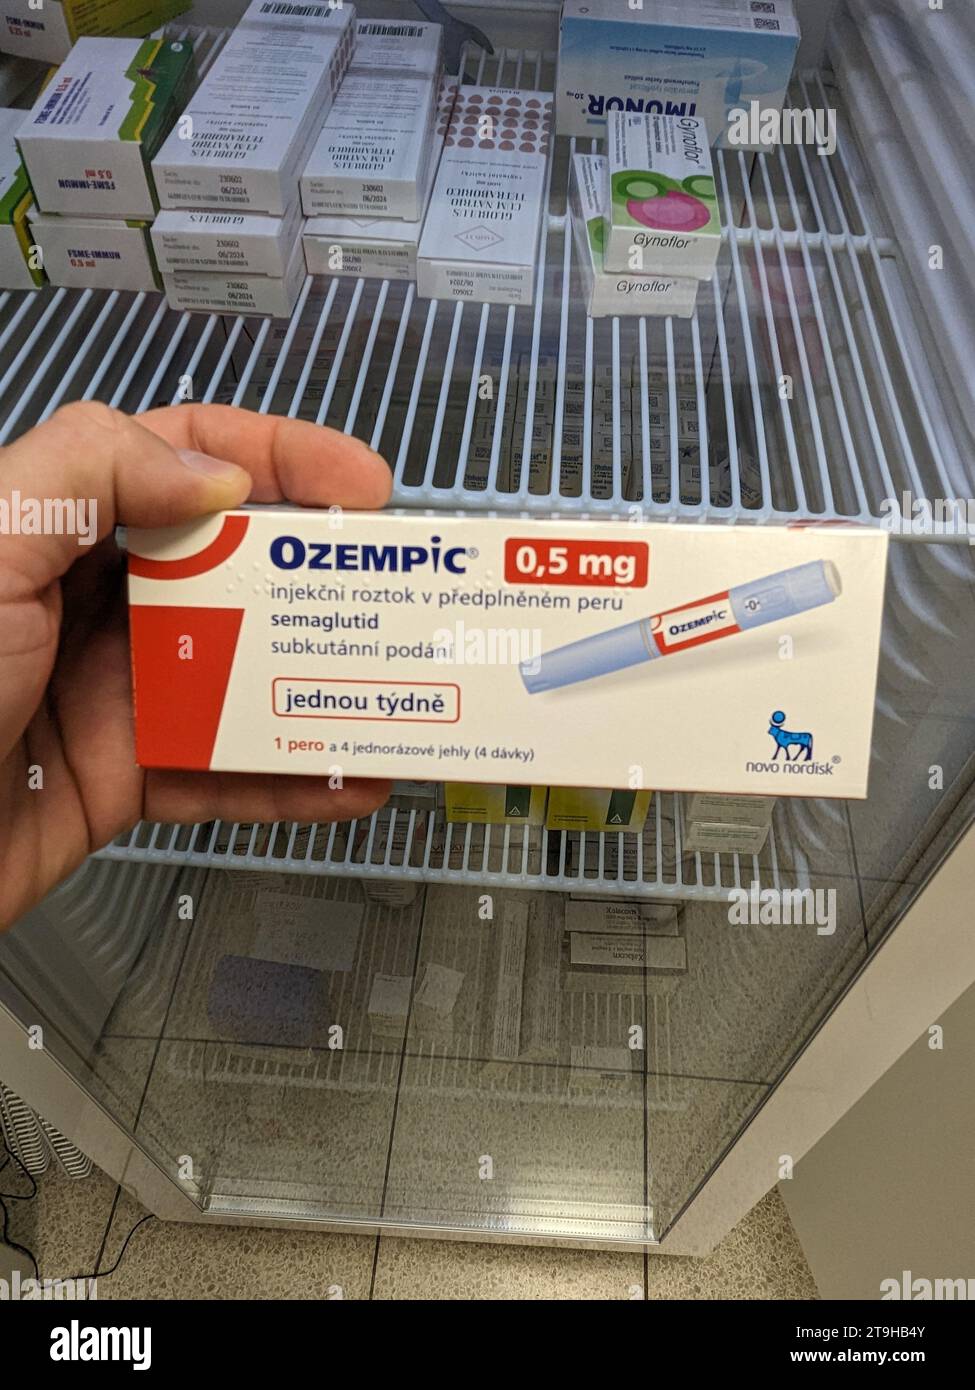 Prag, Tschechische republik, 22. Juni 2023: Ozempic Box. Tschechische Version der ozempic-Medikation. Diabetesbehandlung in Tschechien. Paket Semaglutid. Stockfoto